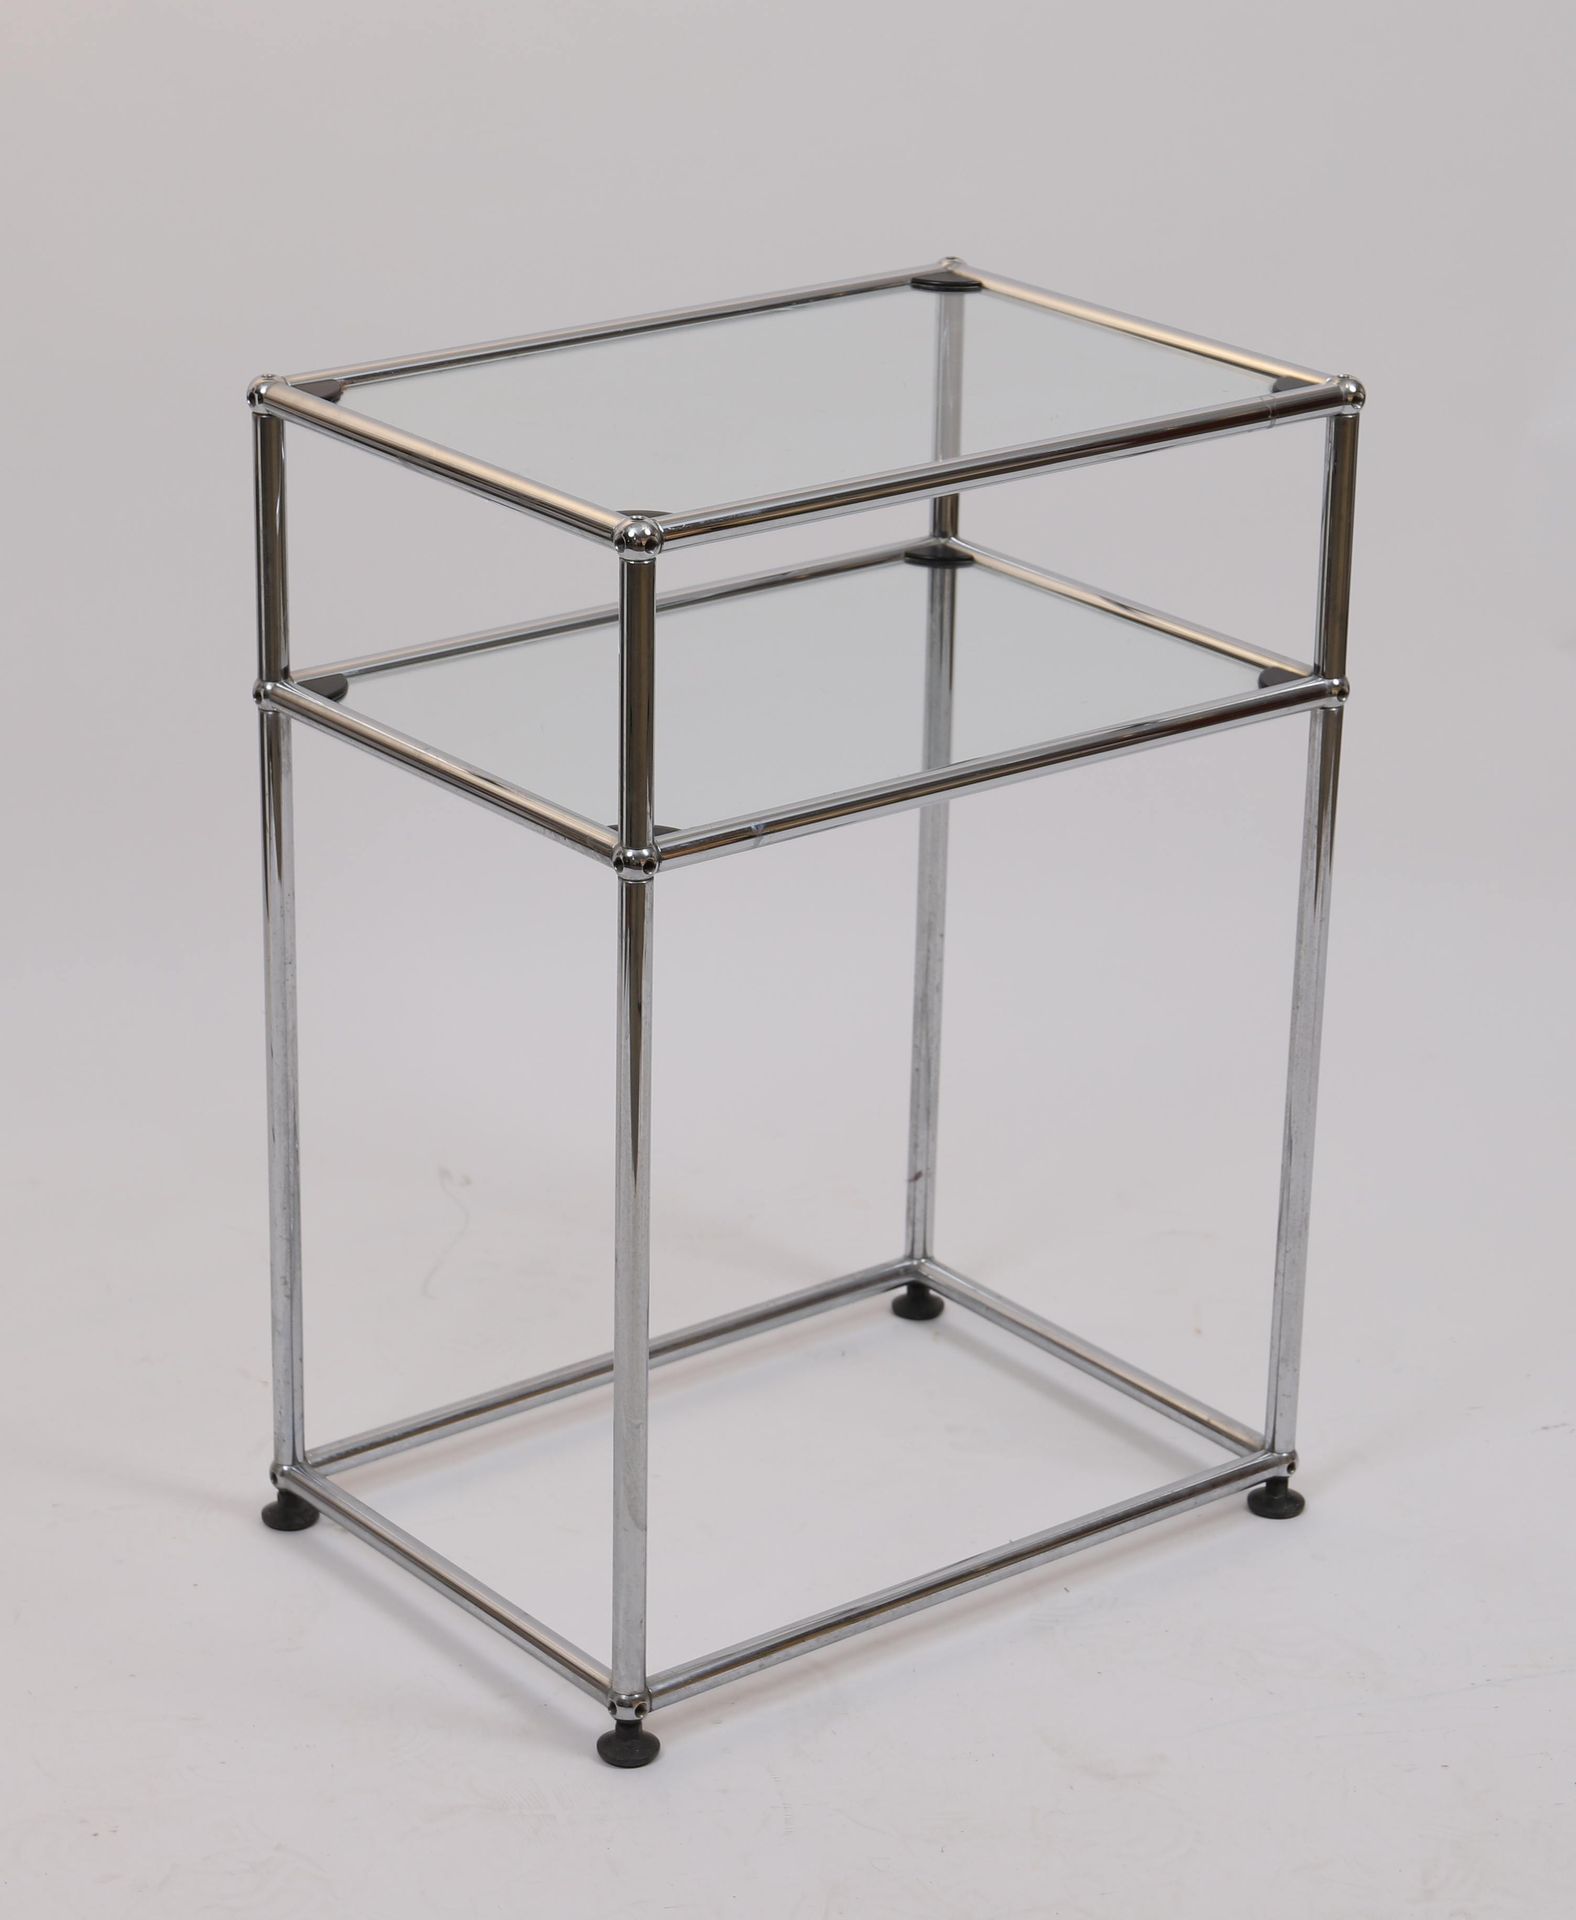 Null 设计咖啡桌

镀铬管状金属矩形桌，有两个玻璃桌面。

20世纪时期

尺寸：高：72；宽：52；深：37厘米